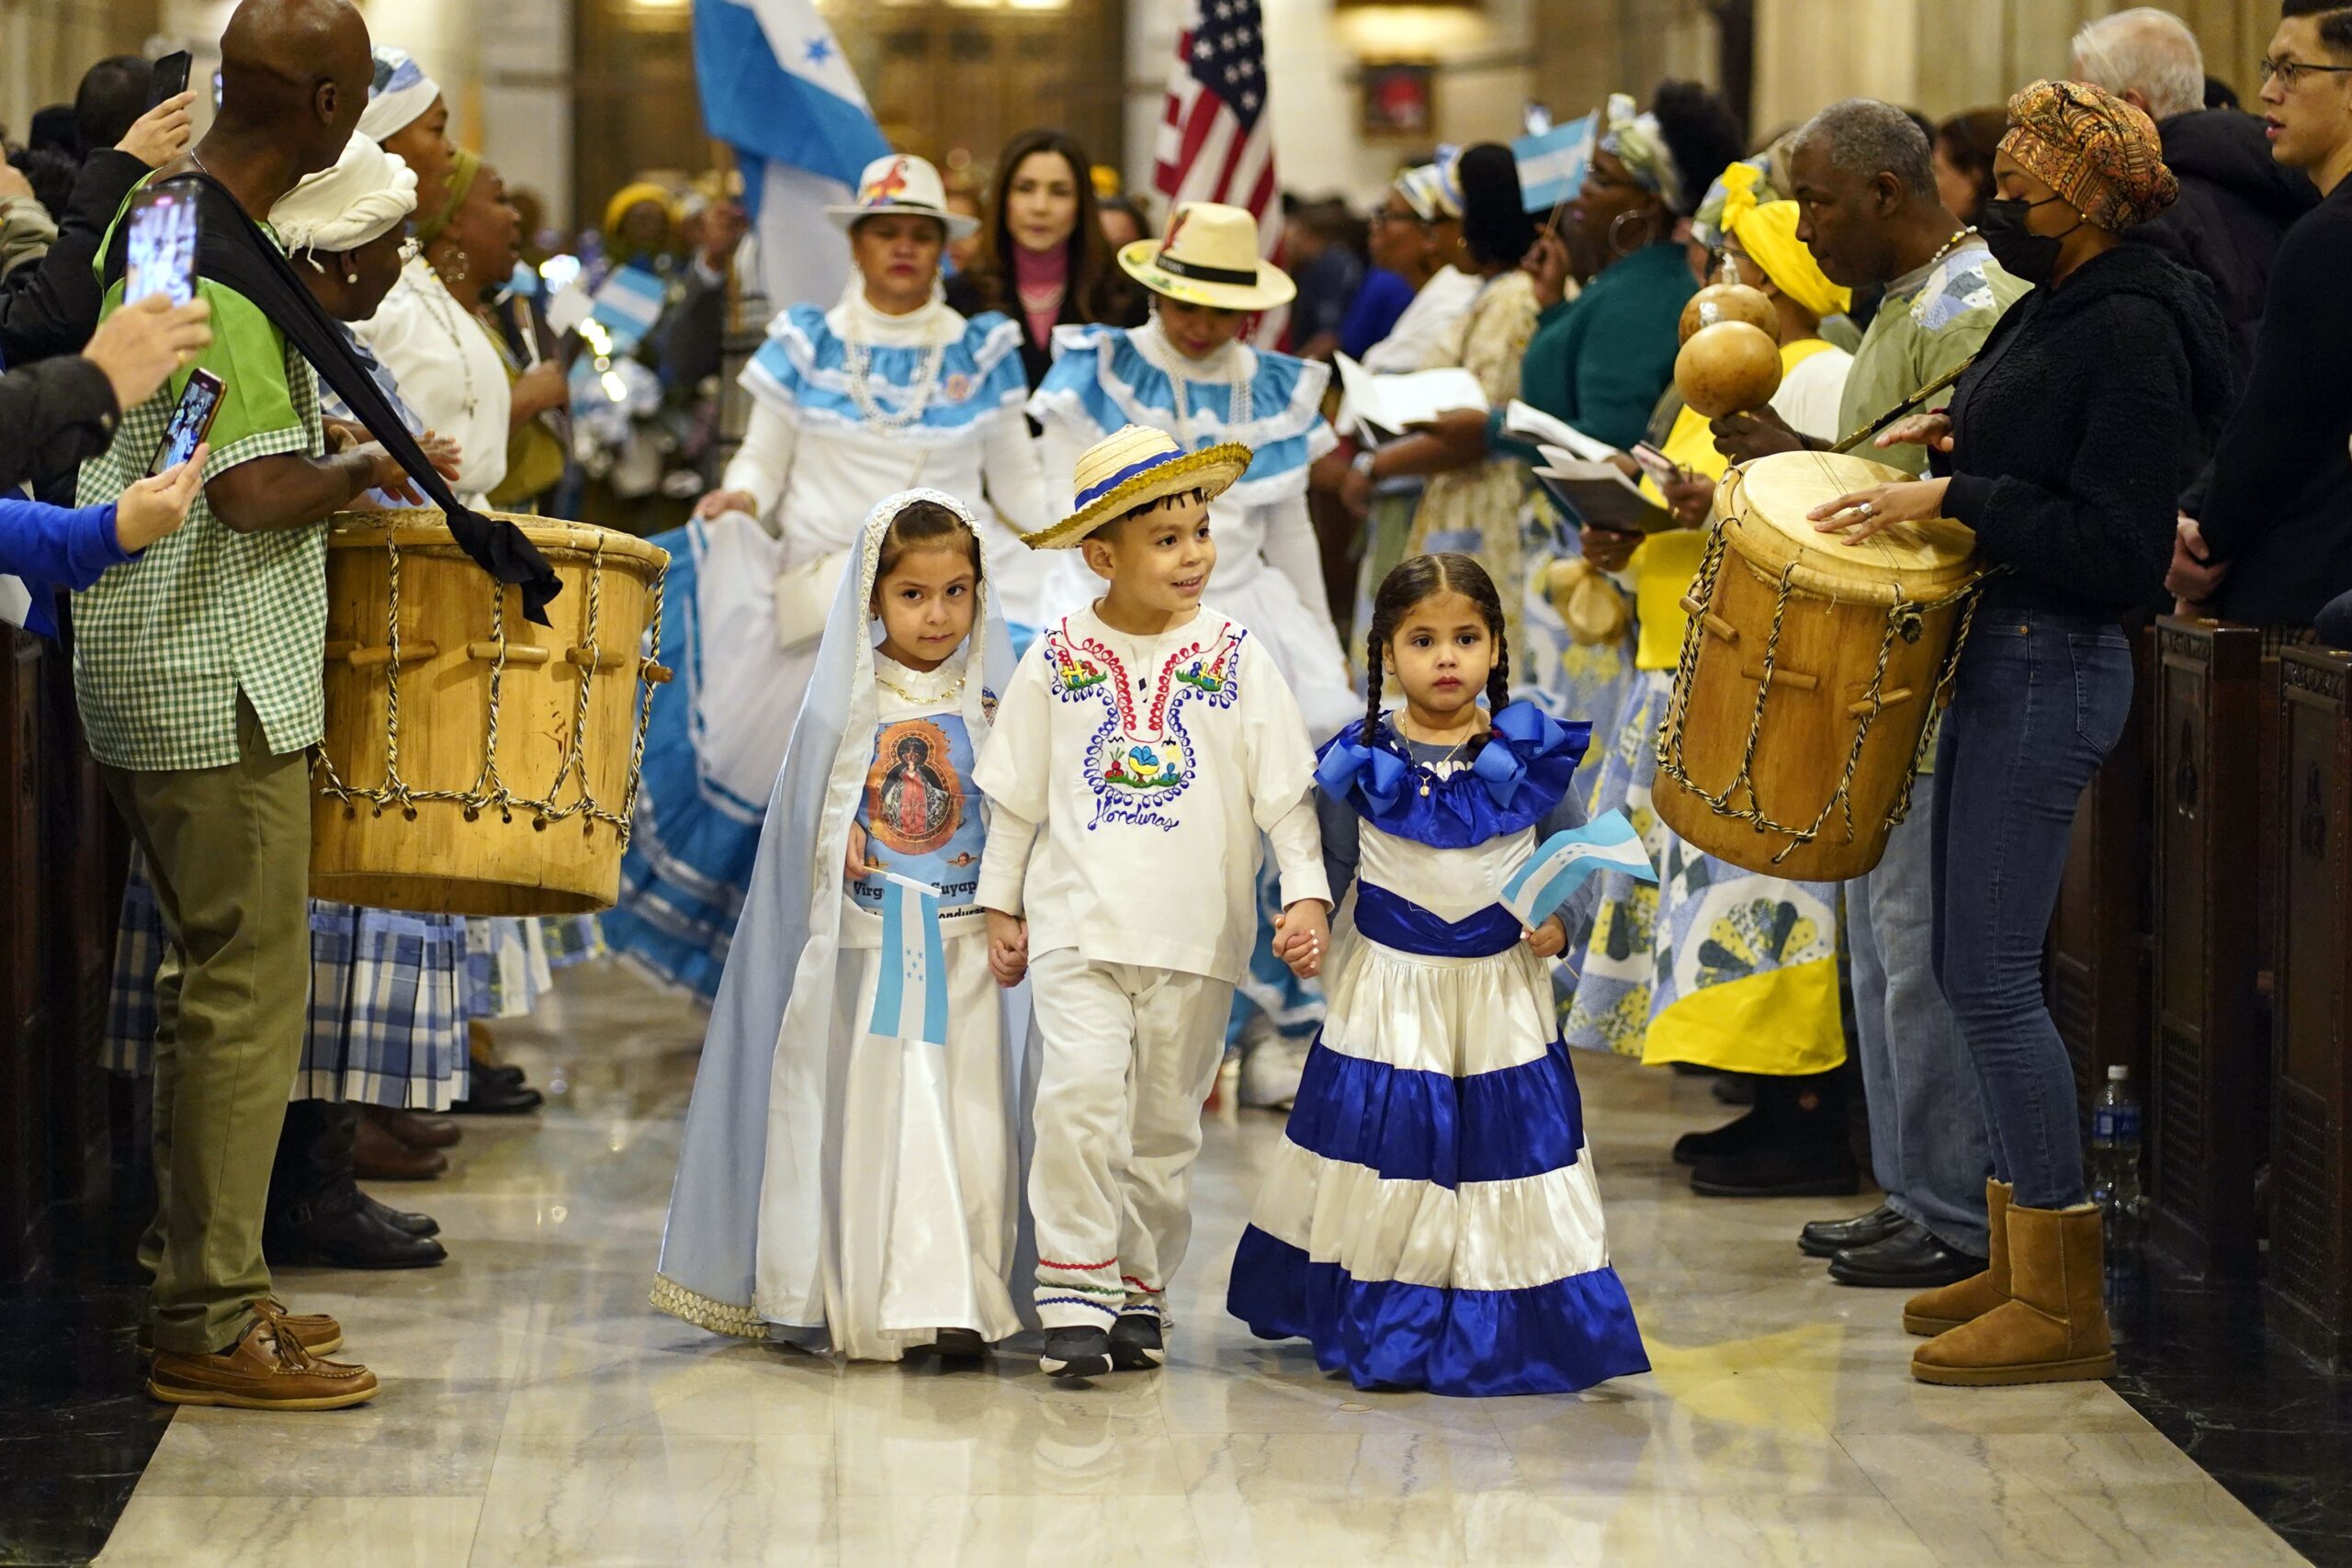 Mes de la hispanidad columna: Niños vestidos con trajes tradicionales llegan en procesión a una Misa en español celebrada en honor de Nuestra Señora de Suyapa, patrona de Honduras, en la Catedral de San Patricio de Nueva York el 5 de febrero de 2023. (Foto OSV News/Gregory A. Shemitz)